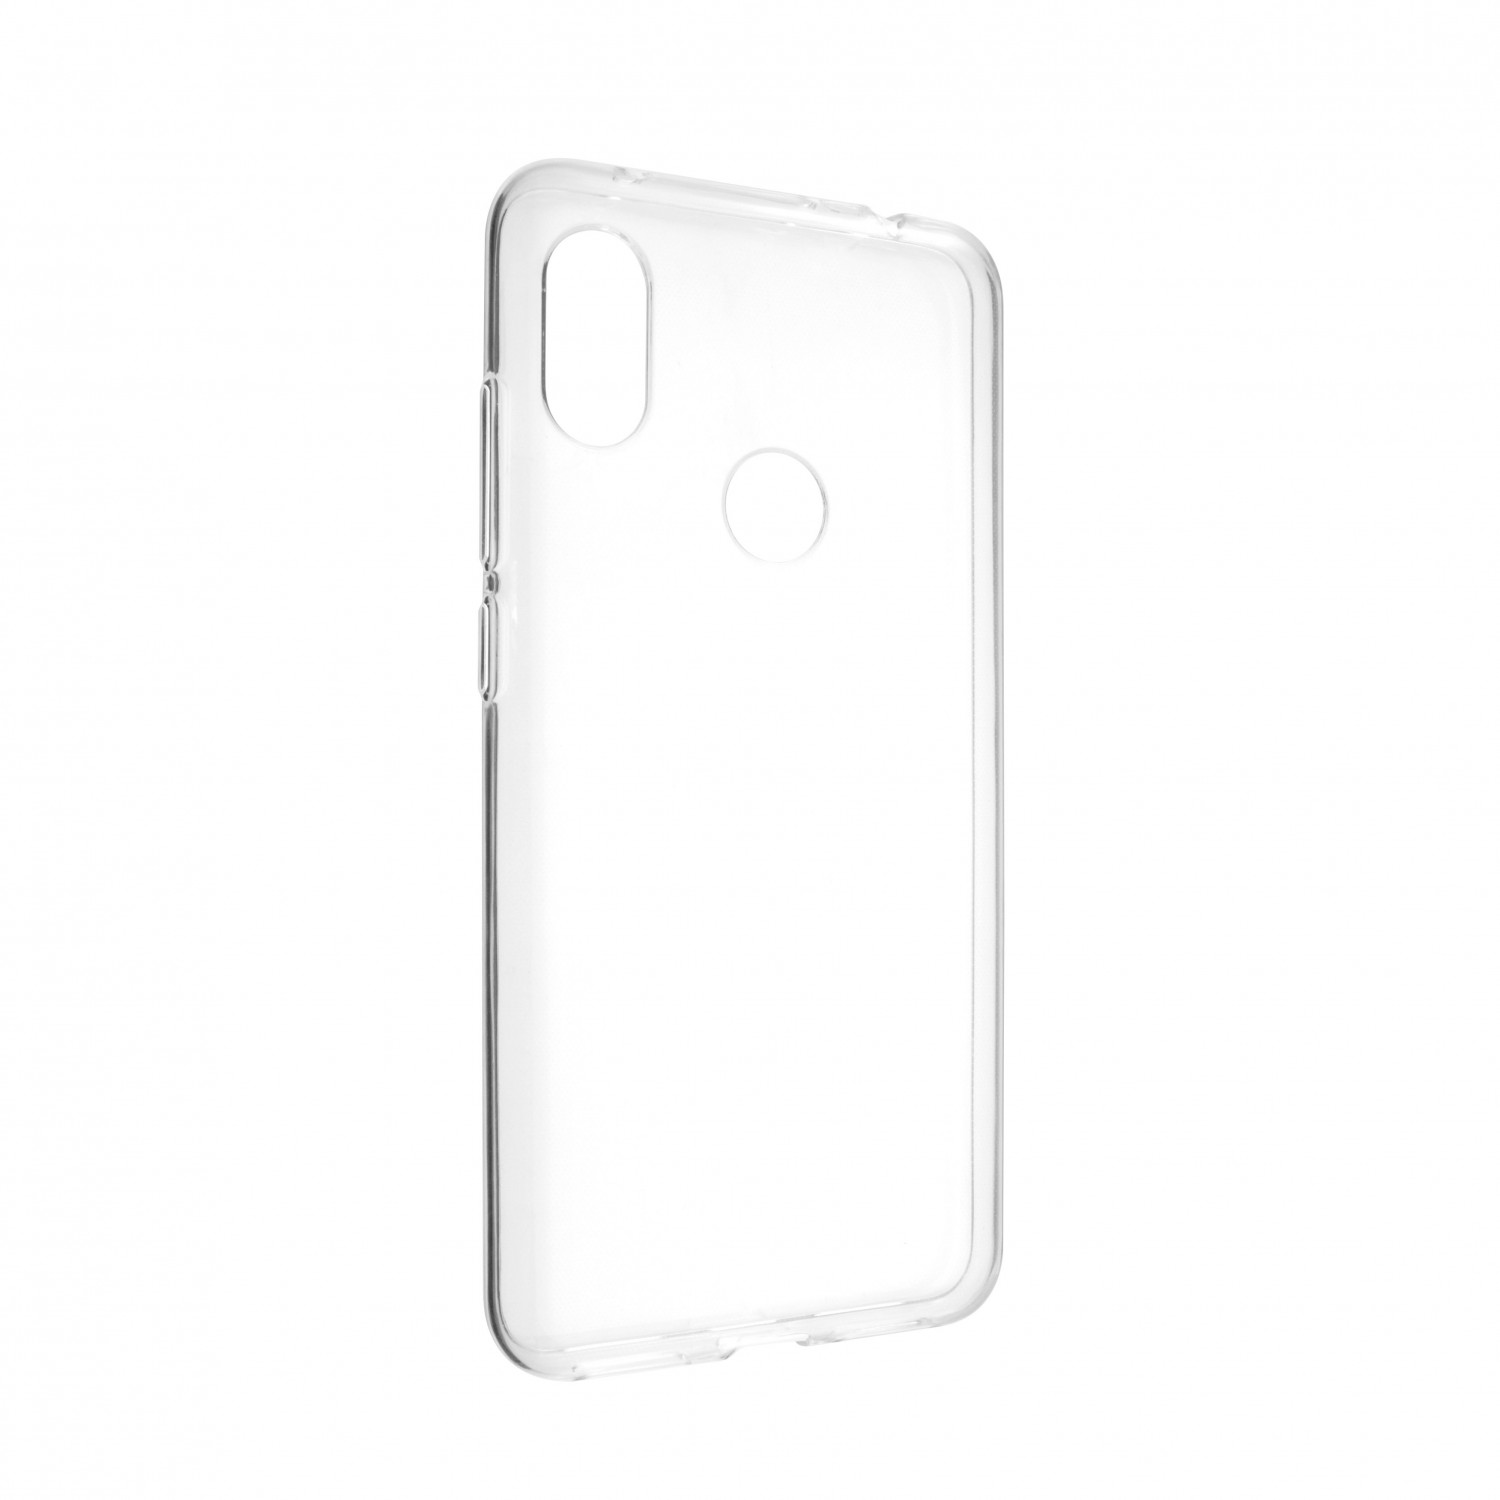 Ultratenké silikonové pouzdro FIXED Skin pro Xiaomi Redmi Note 6 Pro, transparentní